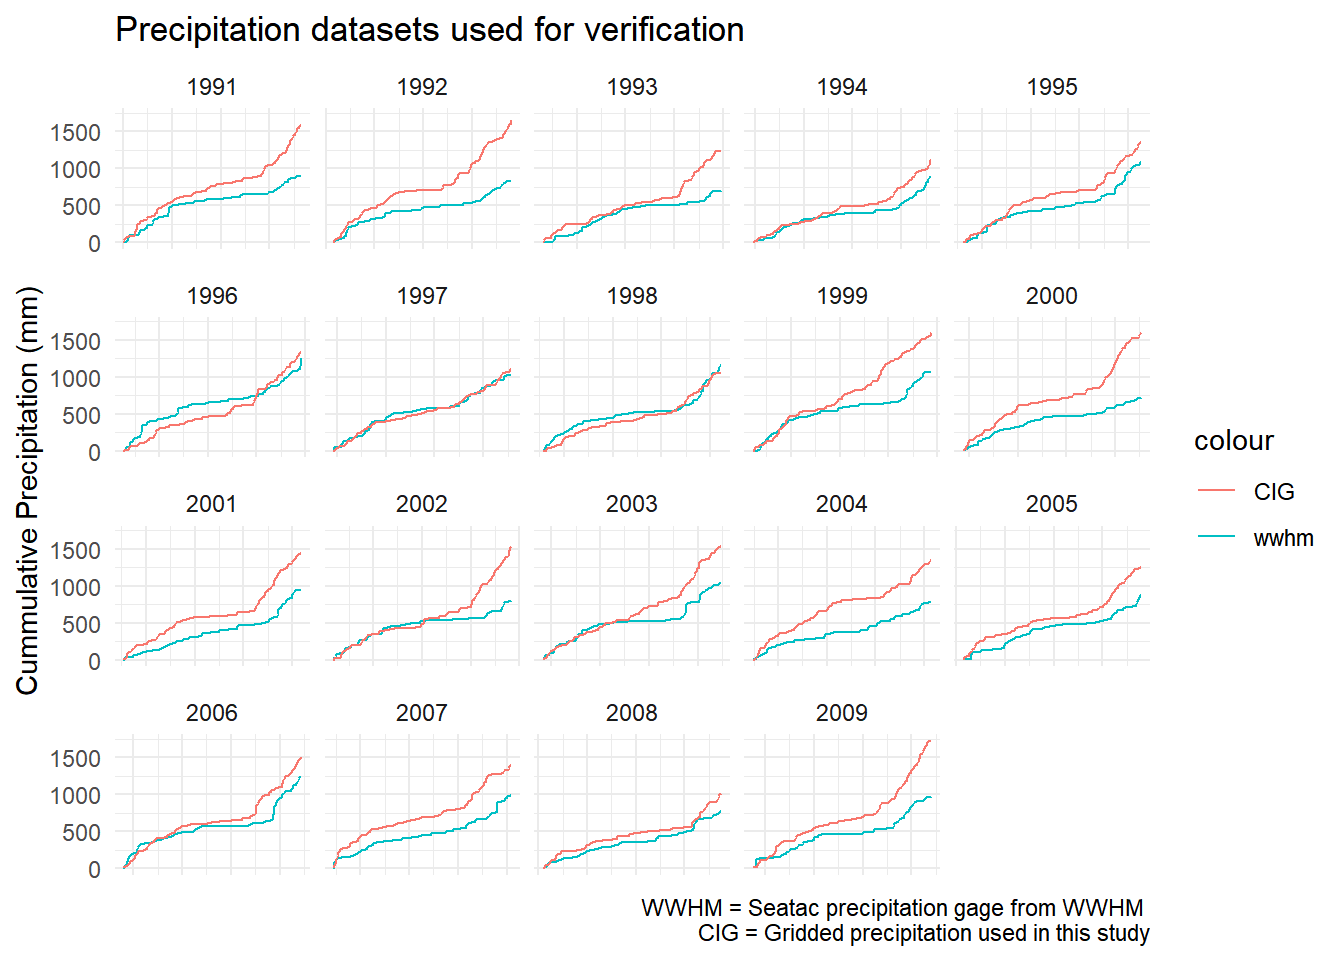 Comparison of precipitation data used in verification